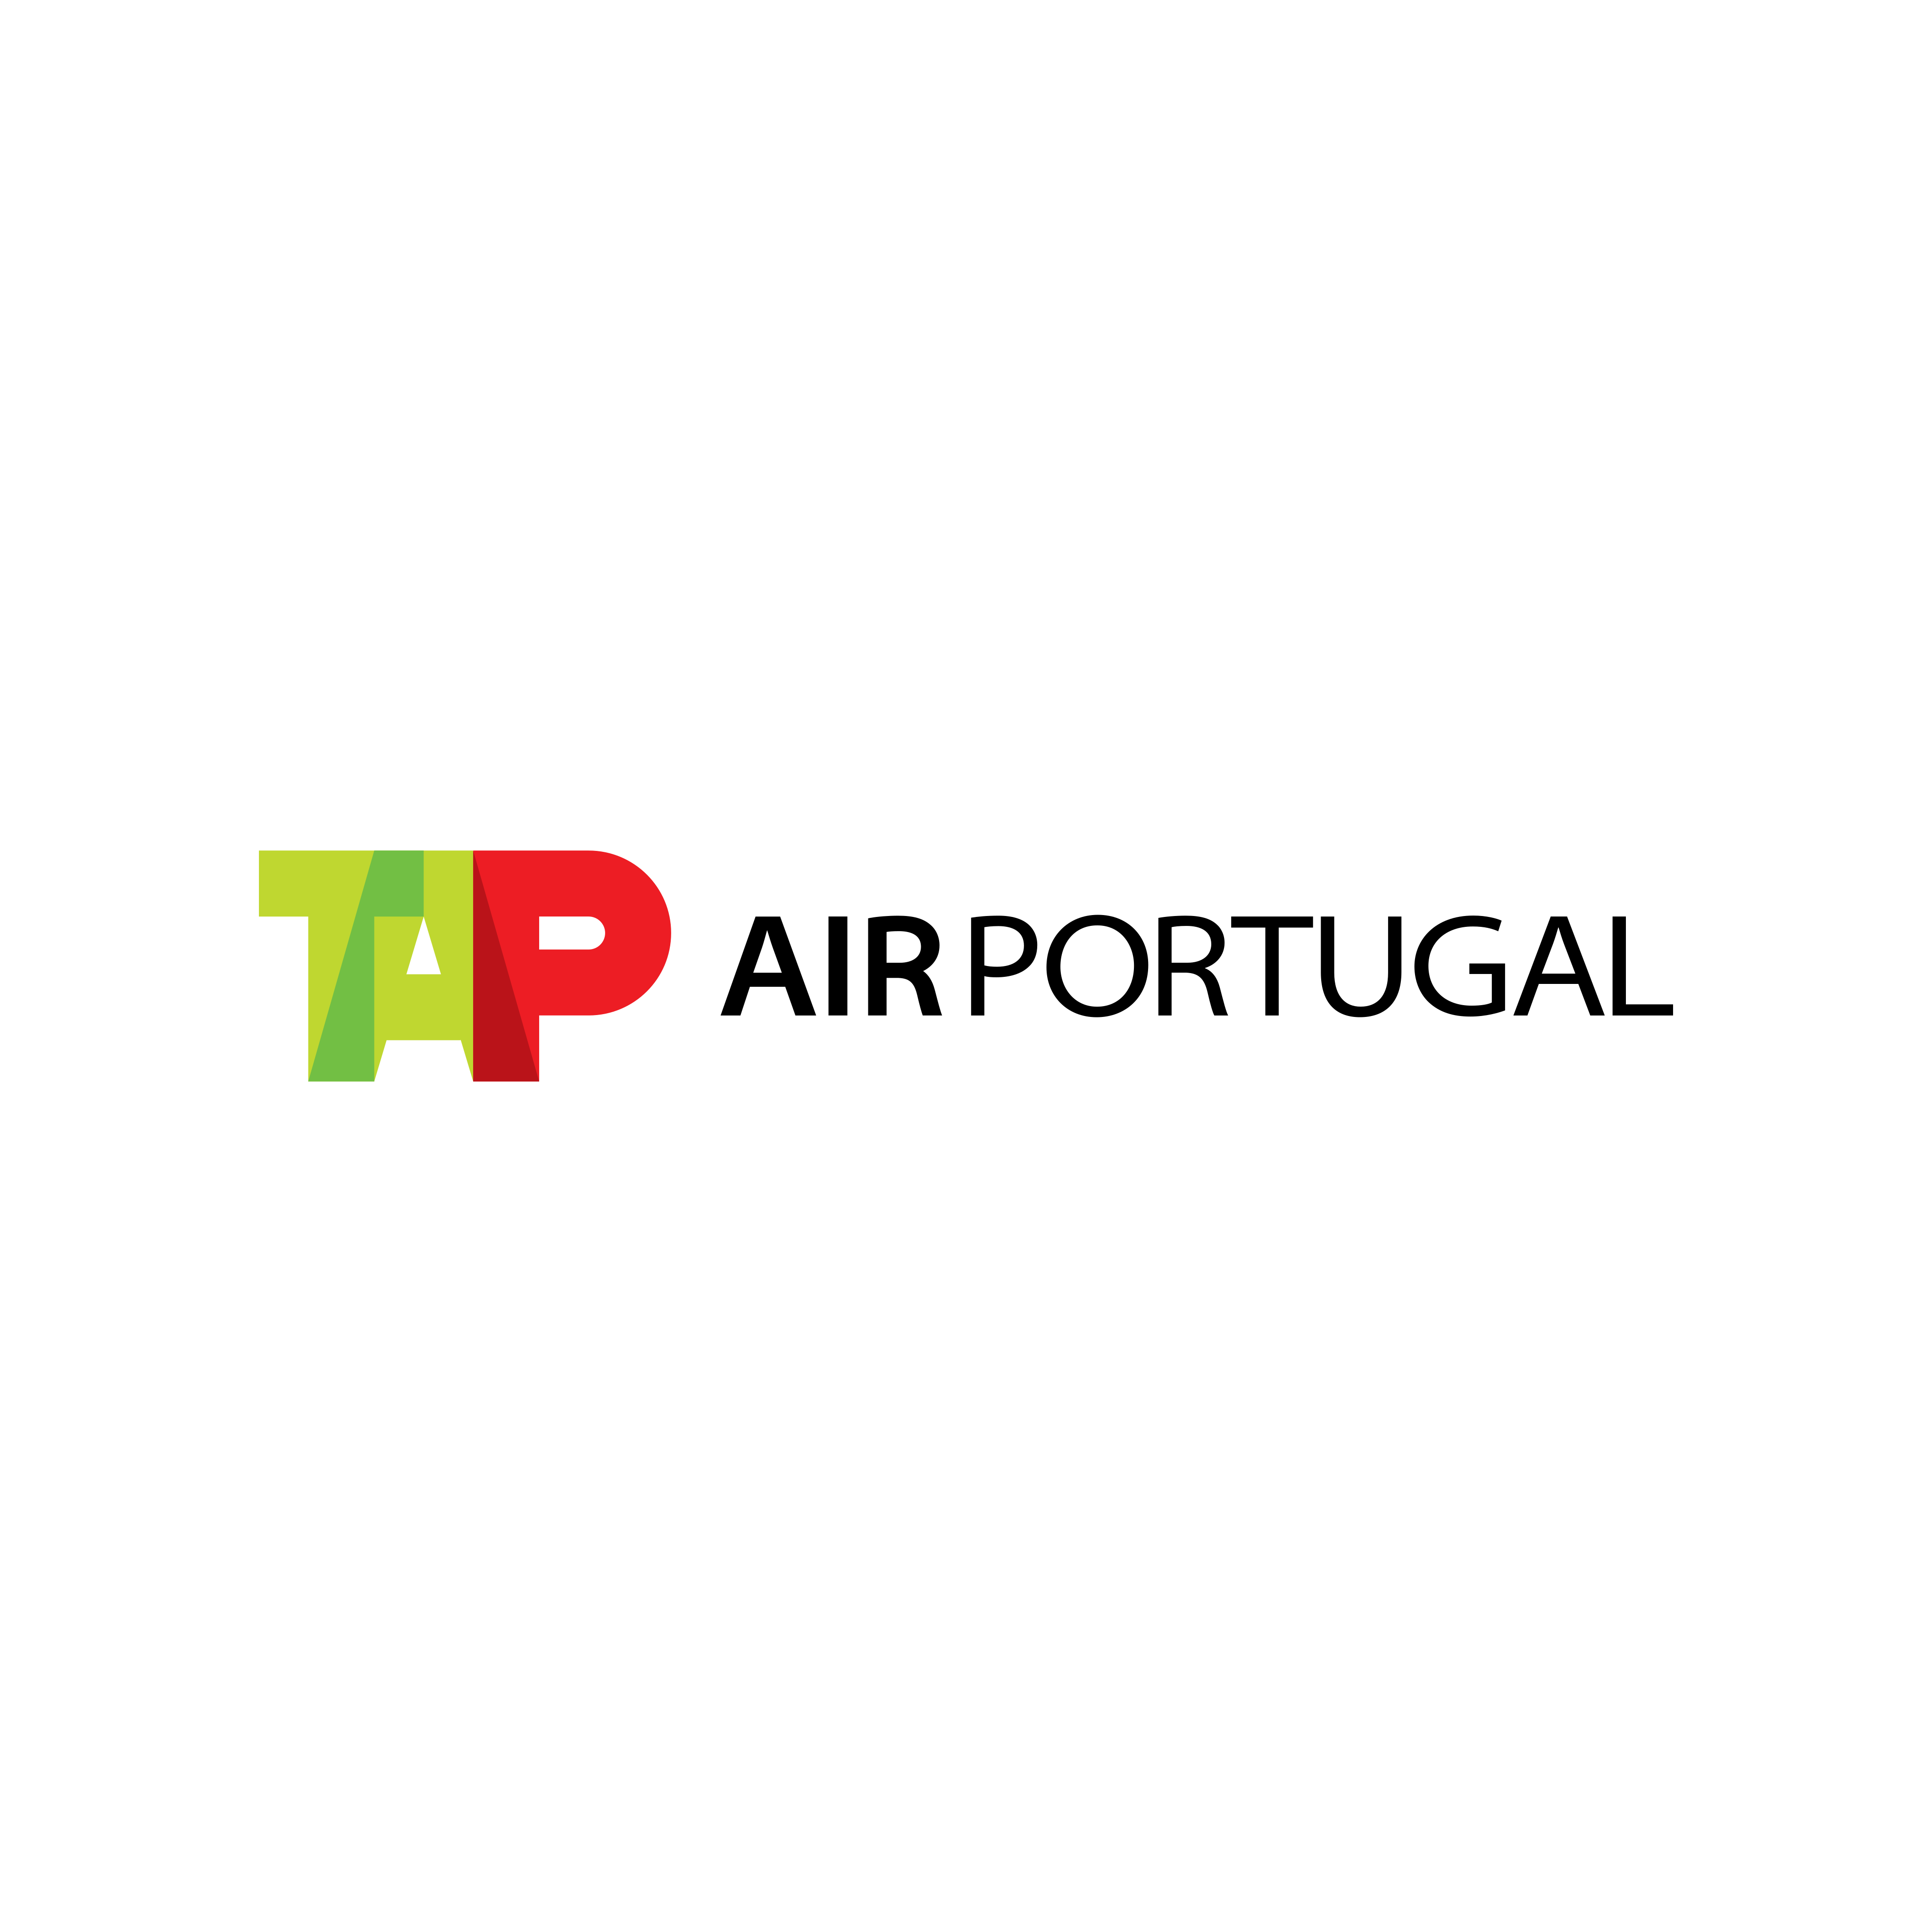 tap air portugal logo 0 - TAP Air Portugal Logo